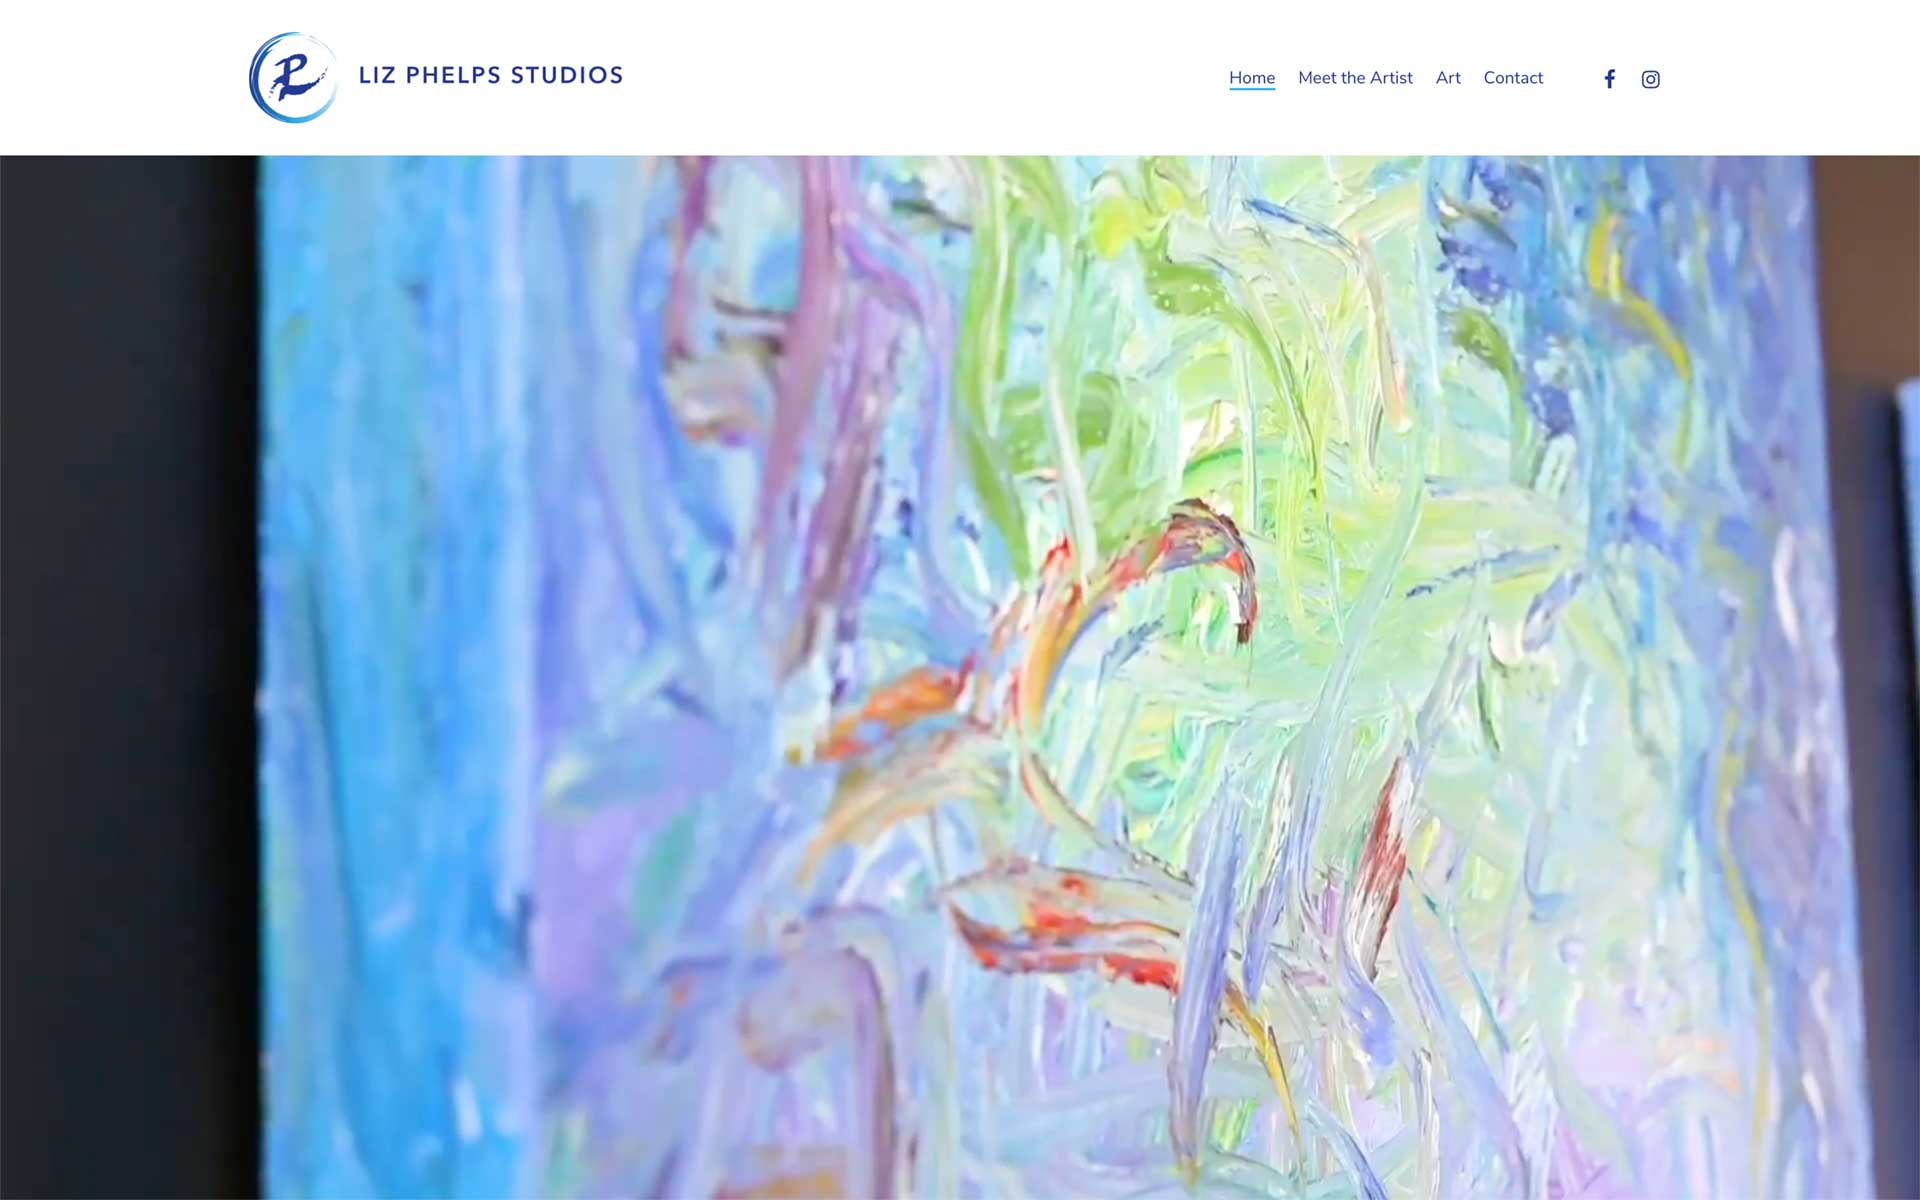 Liz Phelps Studios Website